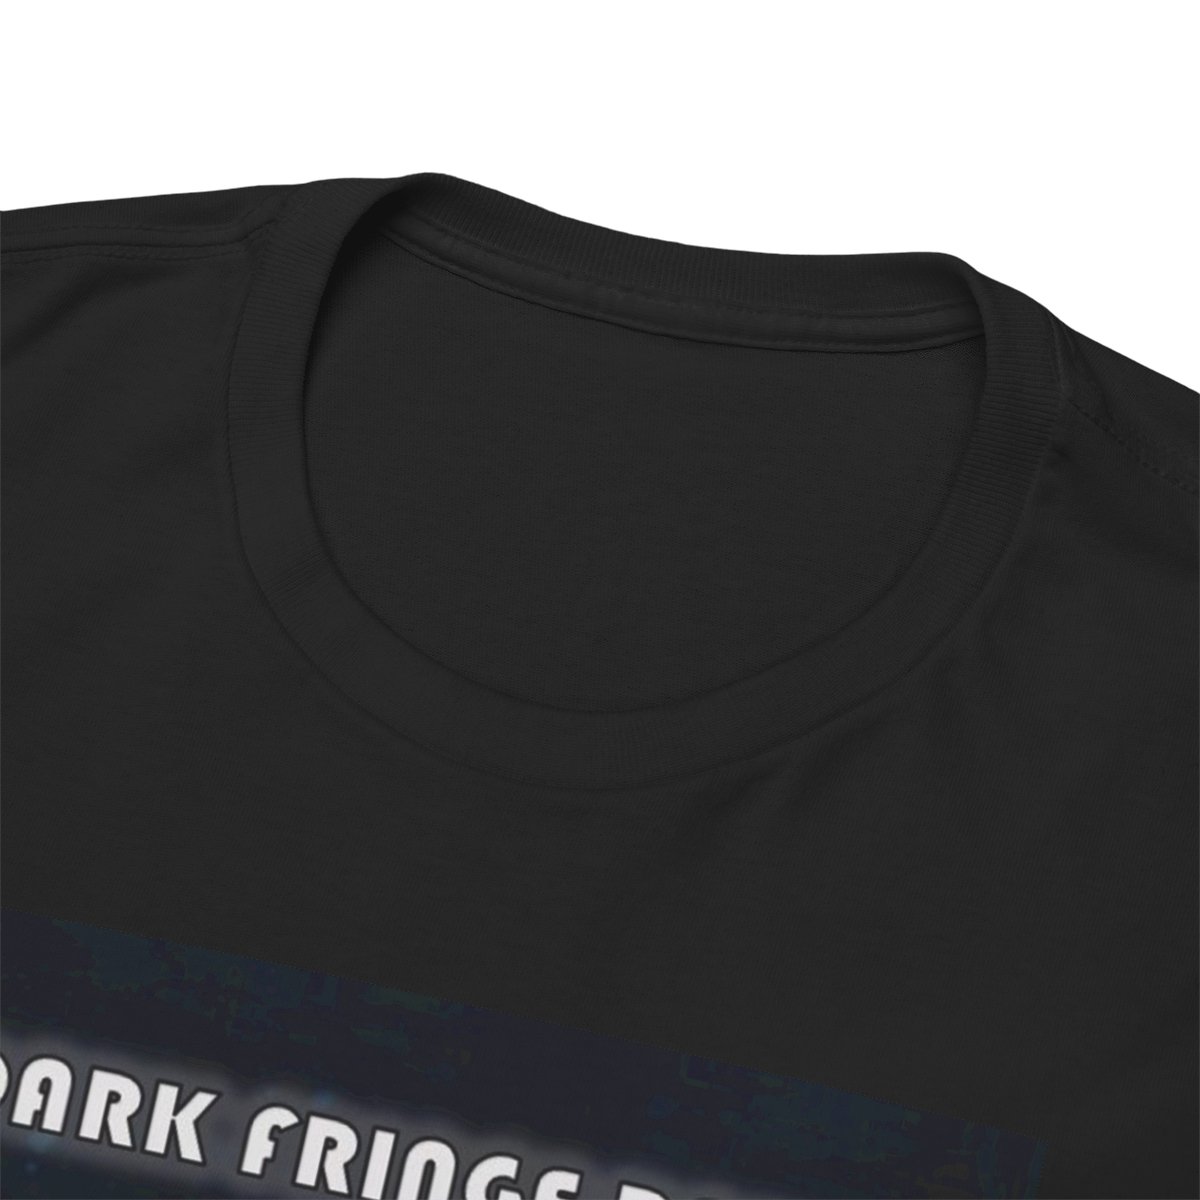 Dark Fringe Radio "Alternate Universe" T-Shirt product thumbnail image